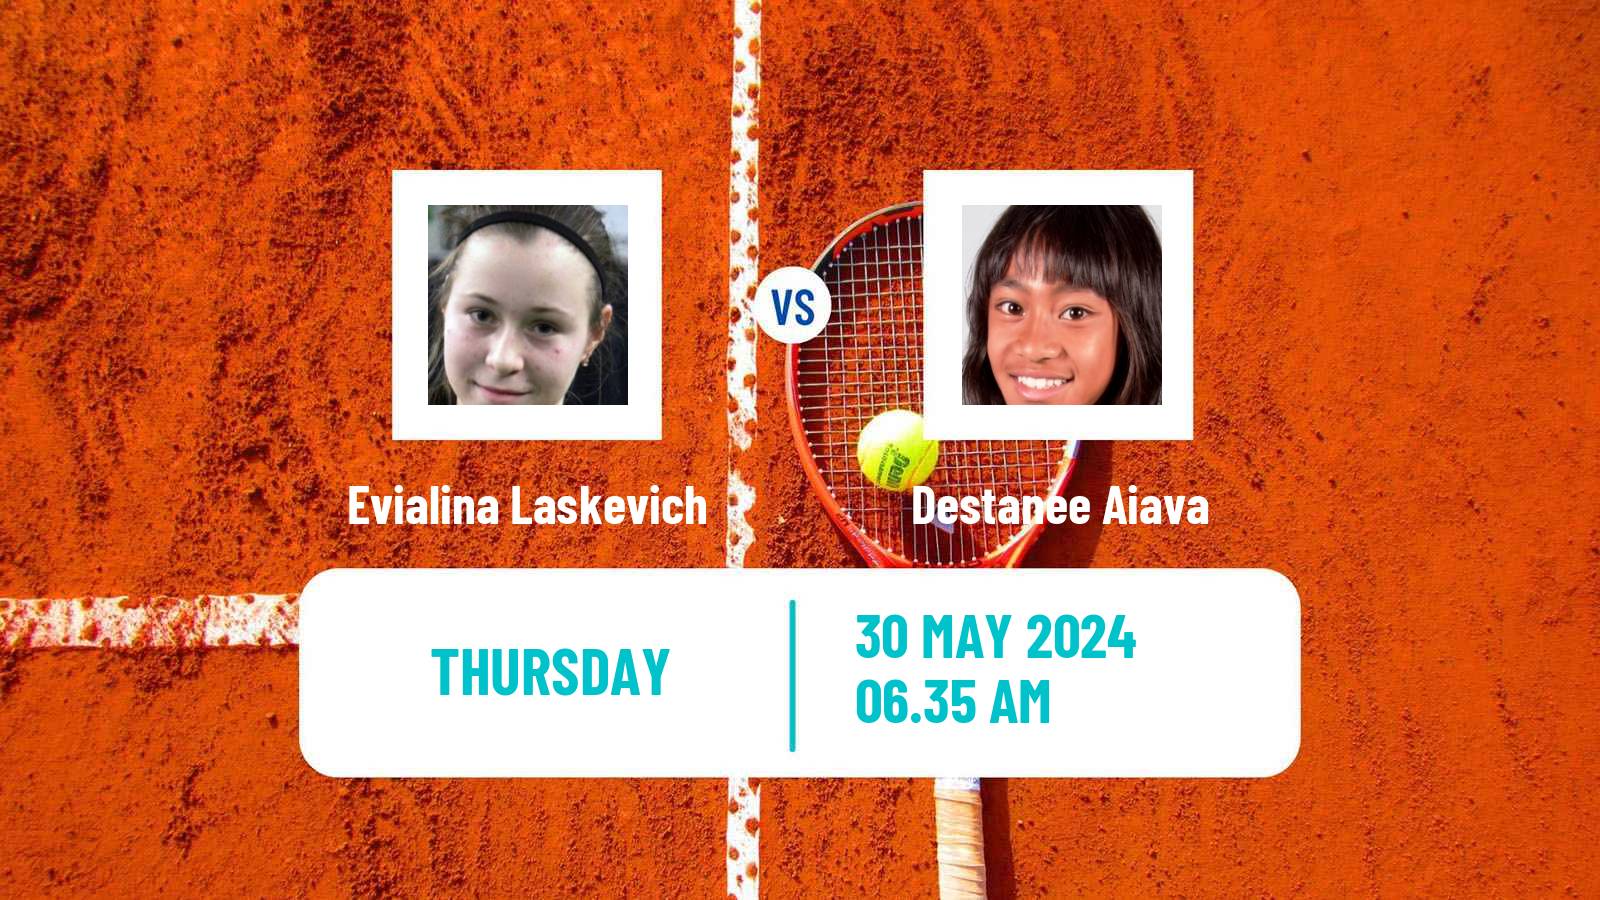 Tennis ITF W50 Montemor O Novo Women Evialina Laskevich - Destanee Aiava